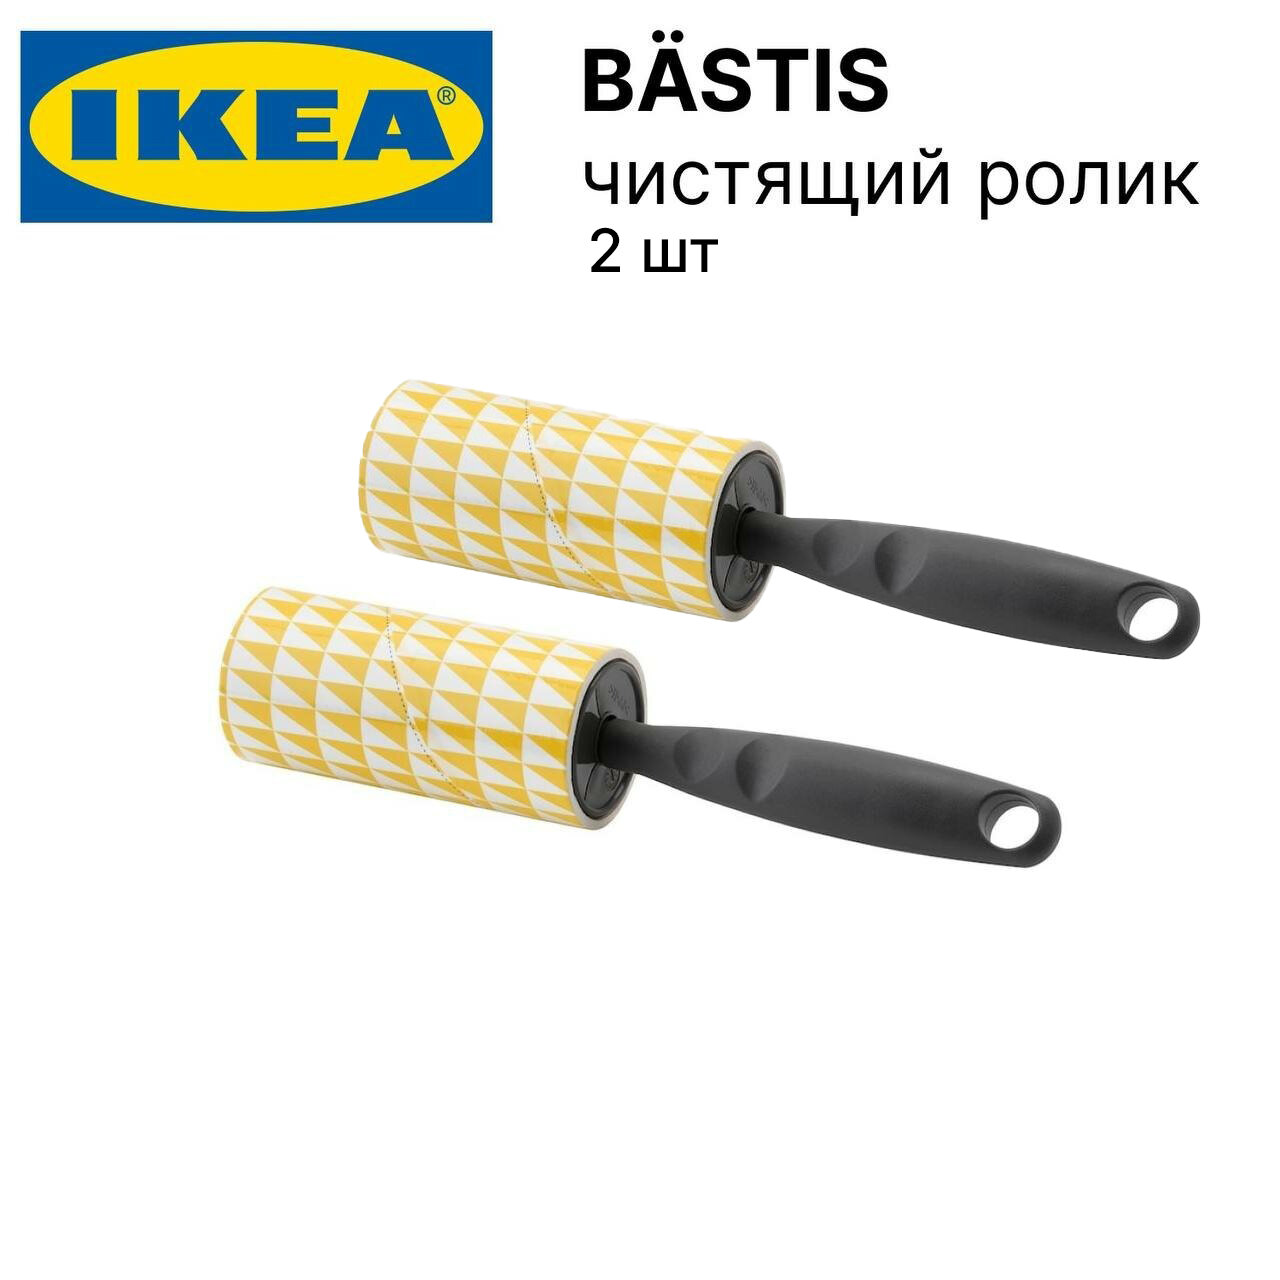 Ролик для одежды икеа бэстис (IKEA BASTIS), 2 шт, ролик для чистки одежды, серый